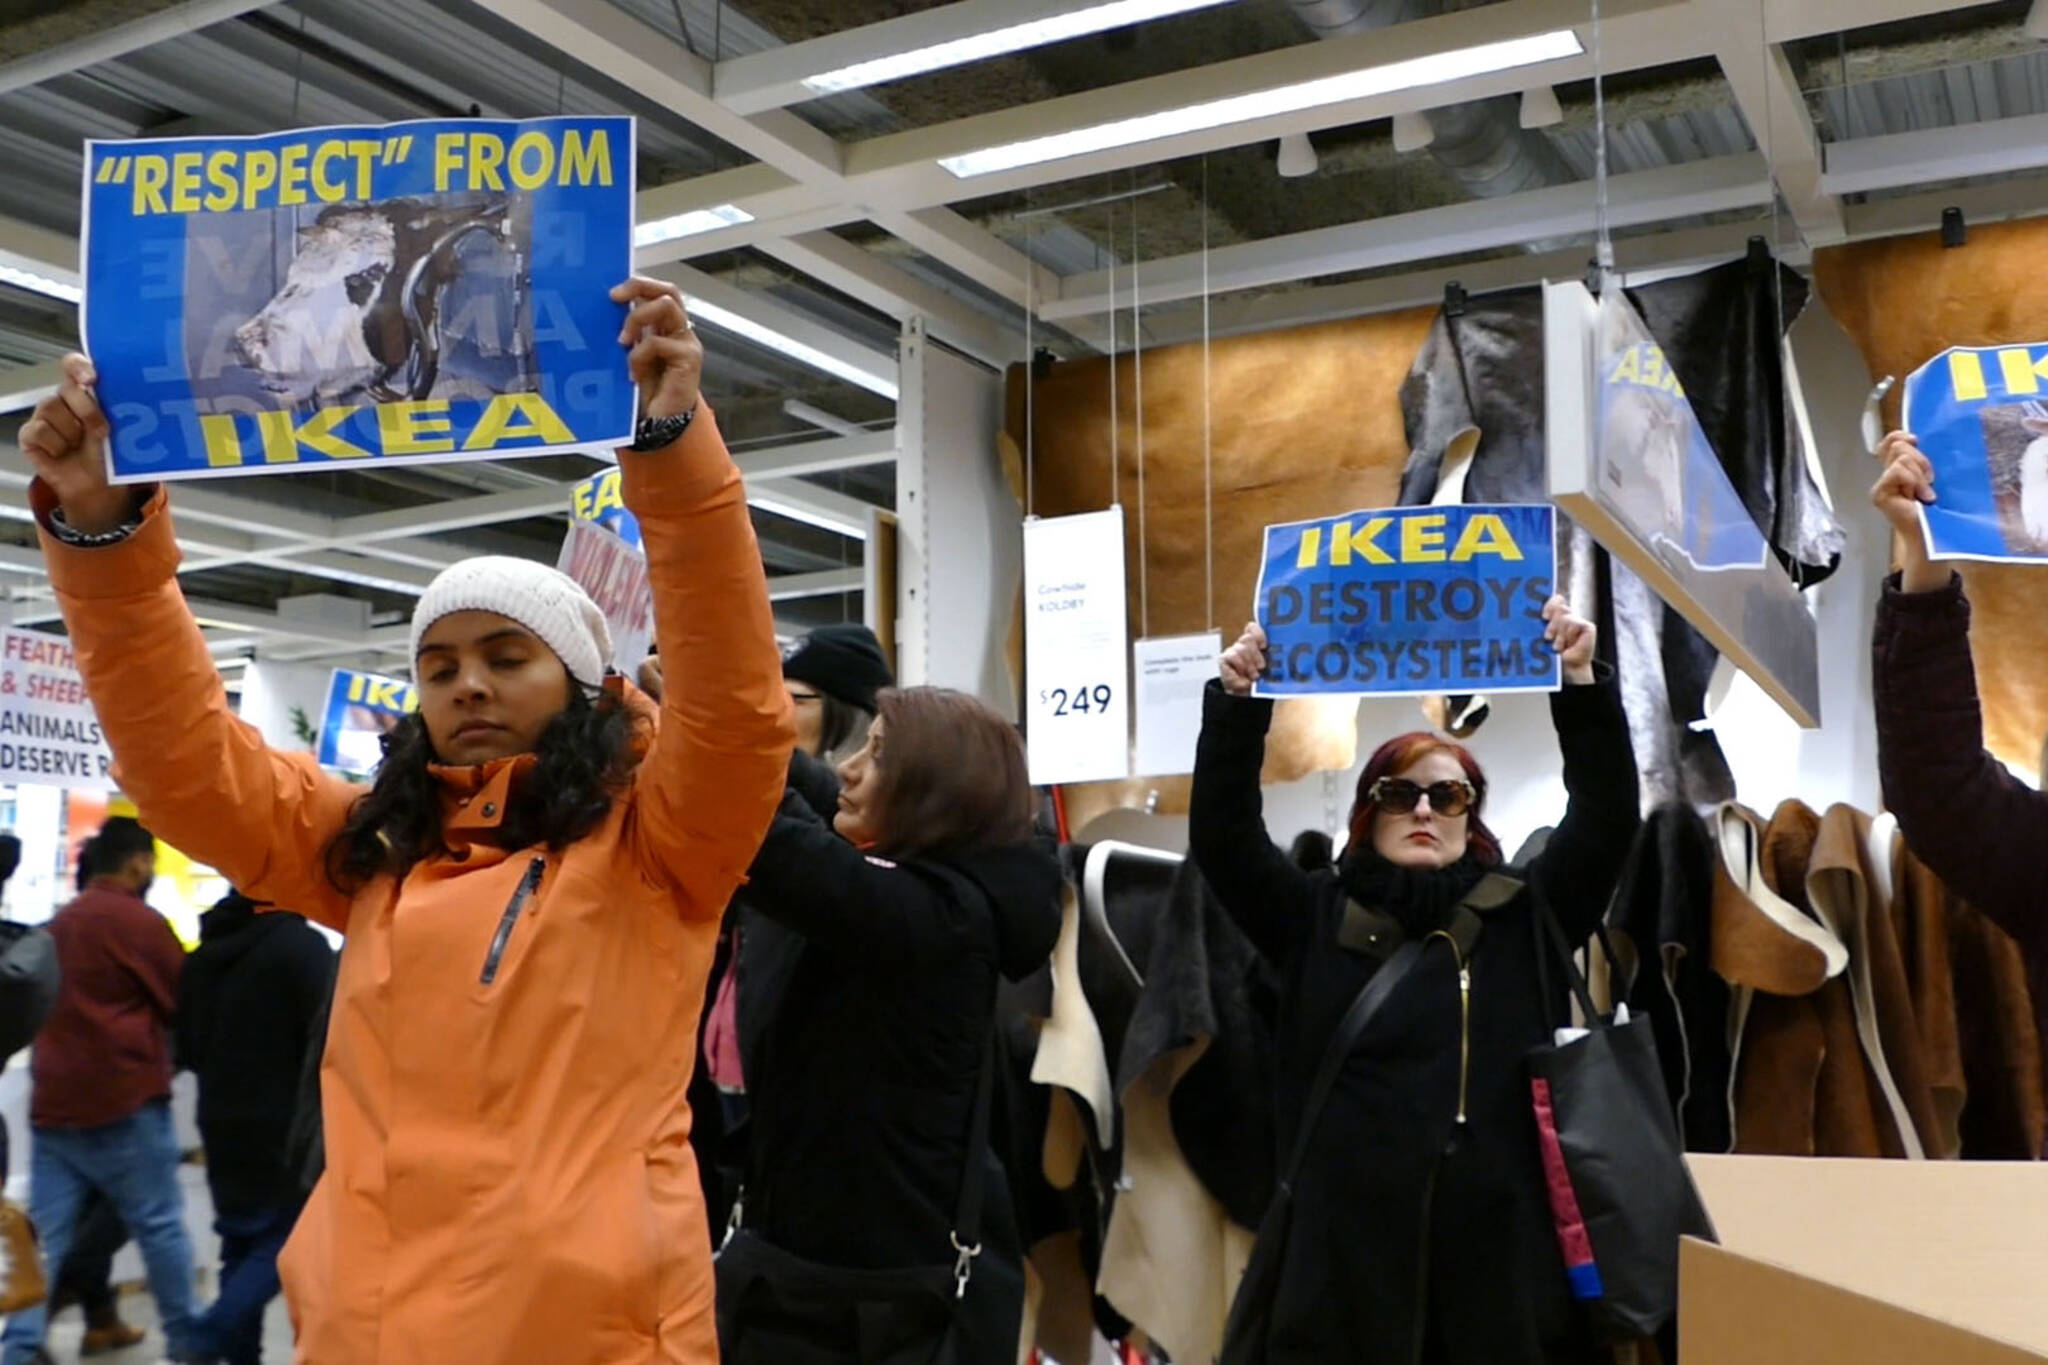 Ikea fur protest